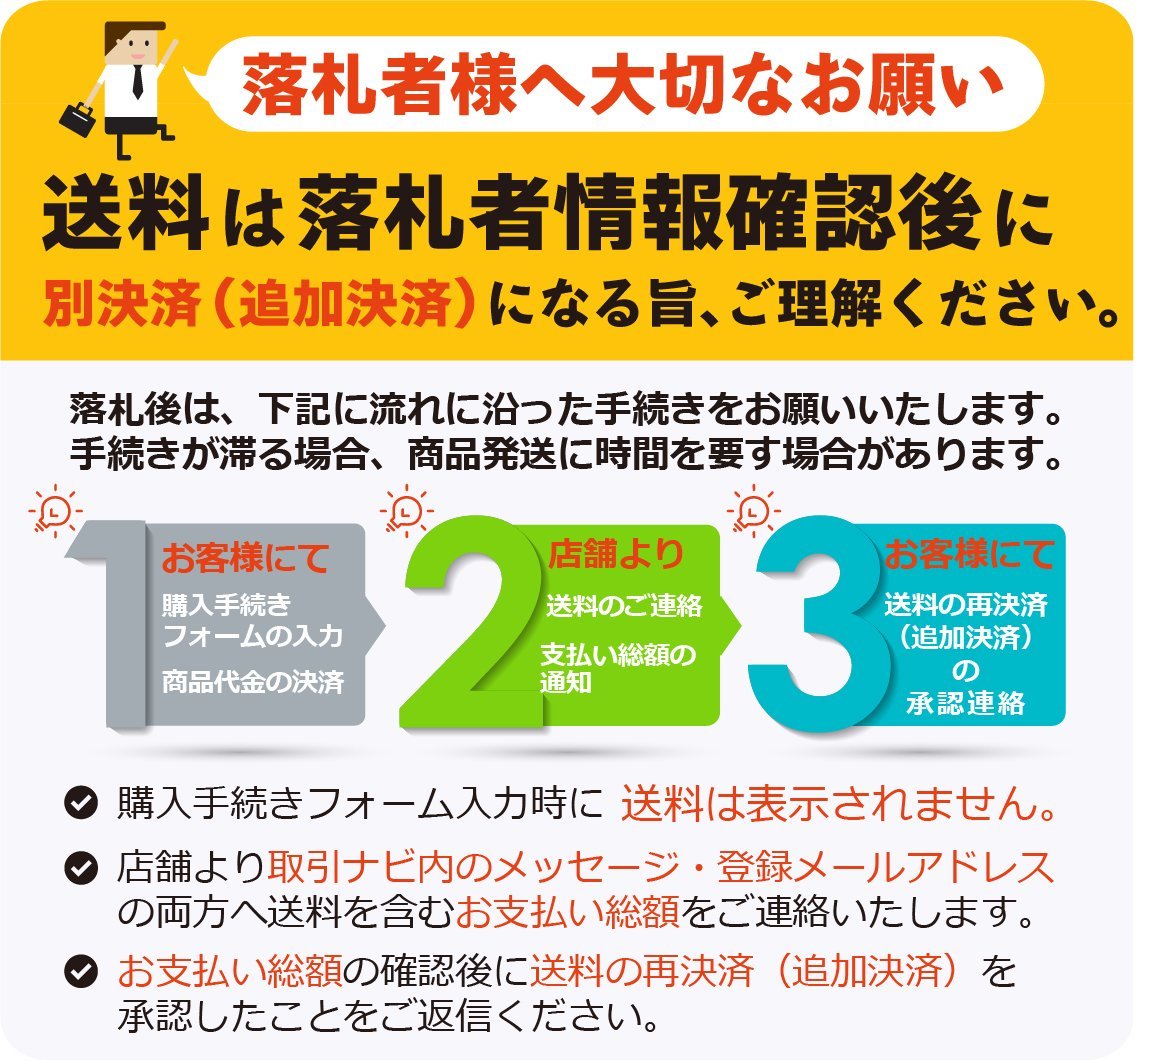  Niigata [ инструкция по эксплуатации только ] (74) Yanmar комбайн инструкция по эксплуатации GC216 HUW specification руководство пользователя б/у #N23102997